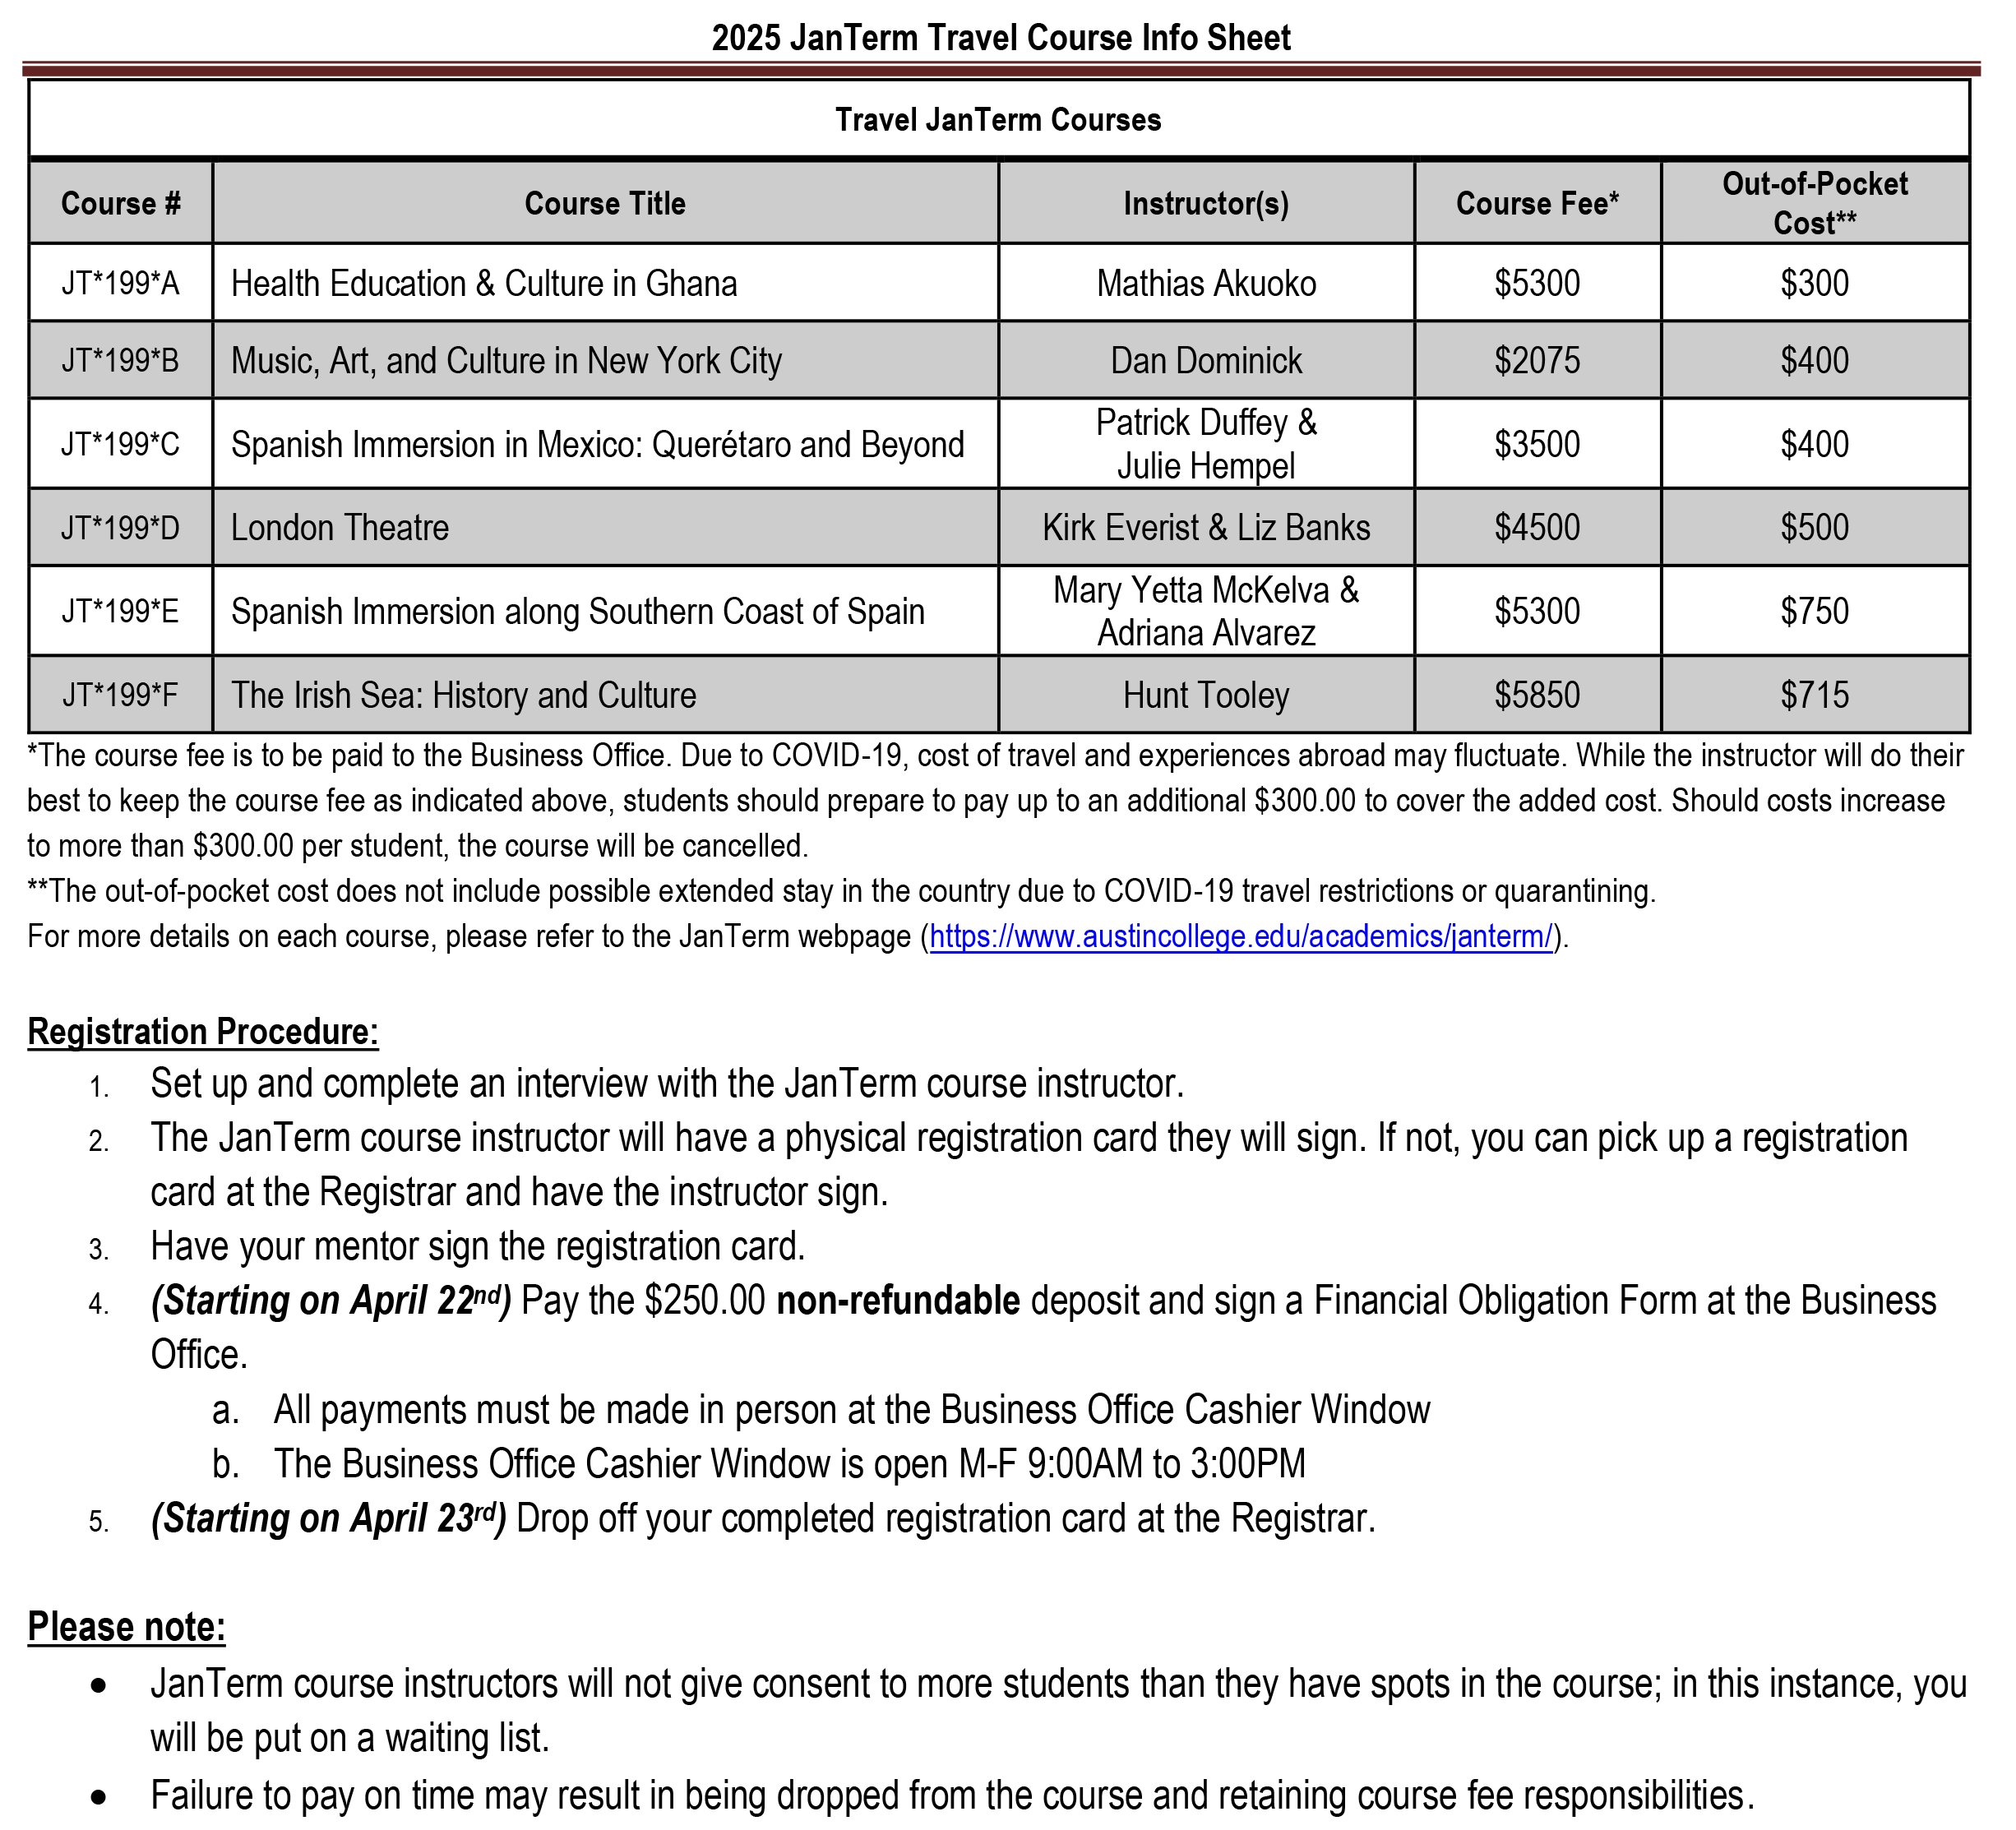 Travel JanTerm 2025 Info Sheet (PNG)